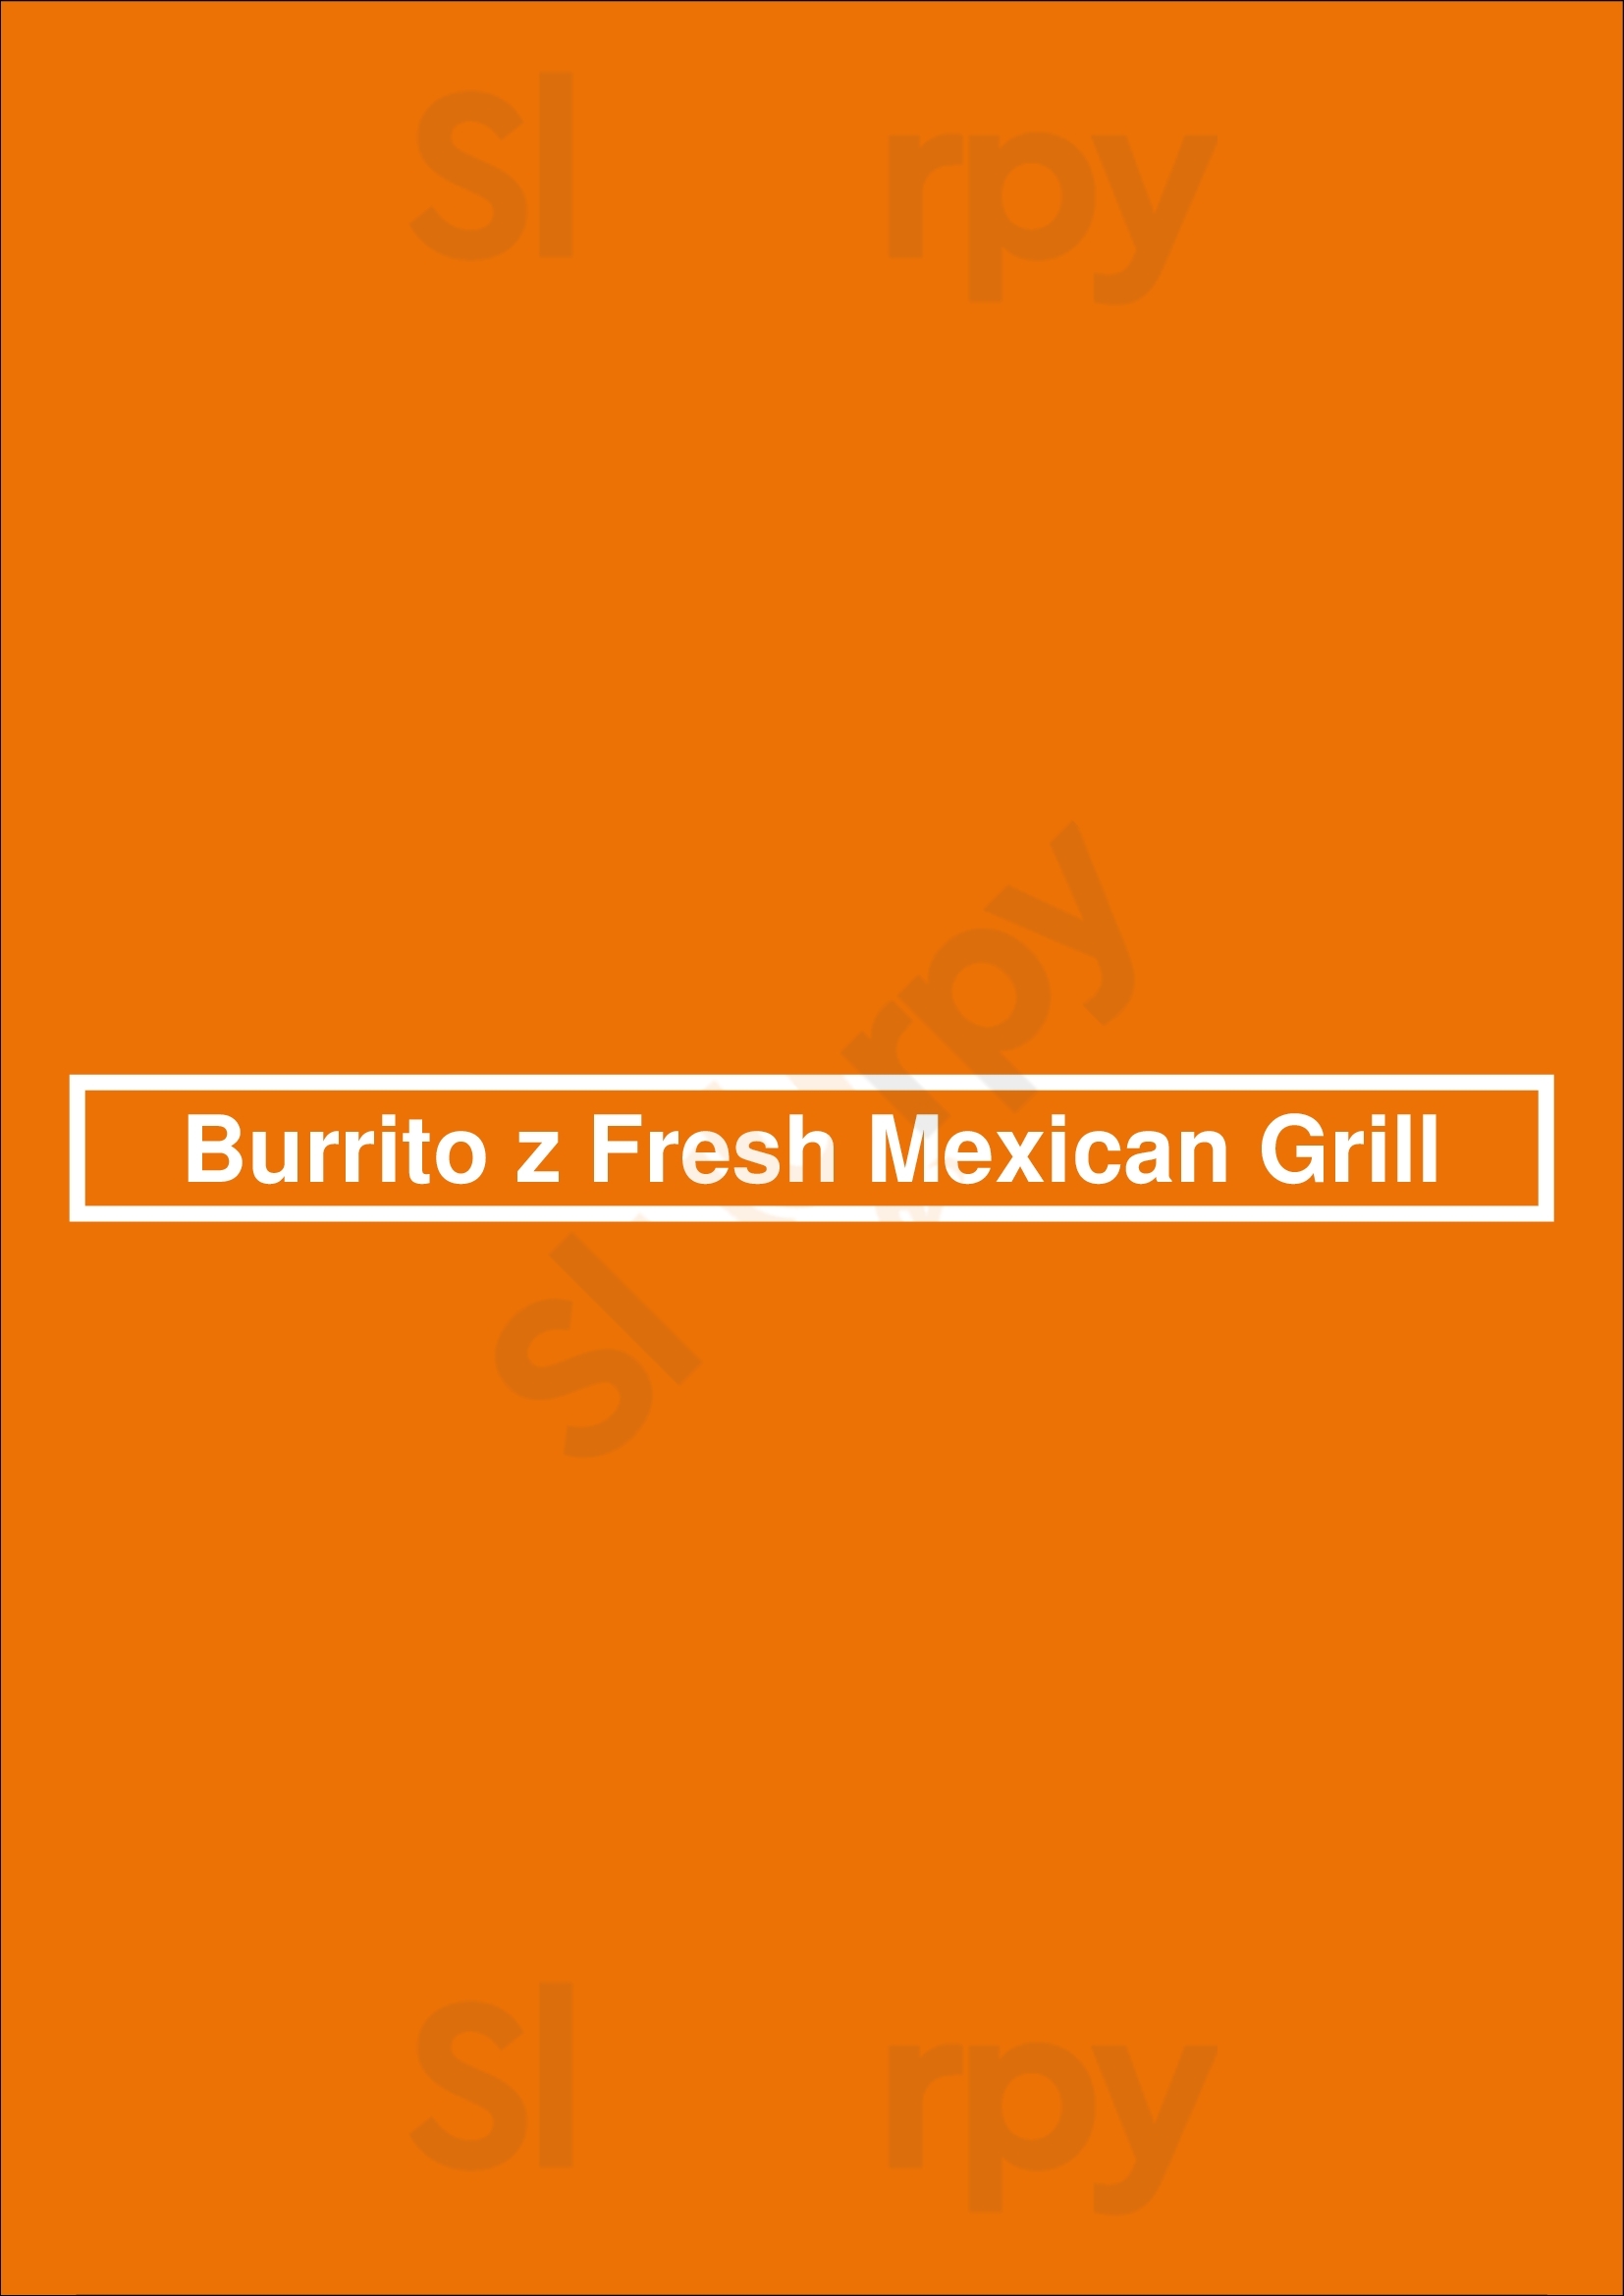 Burrito Z Fresh Mexican Grill Oakville Menu - 1